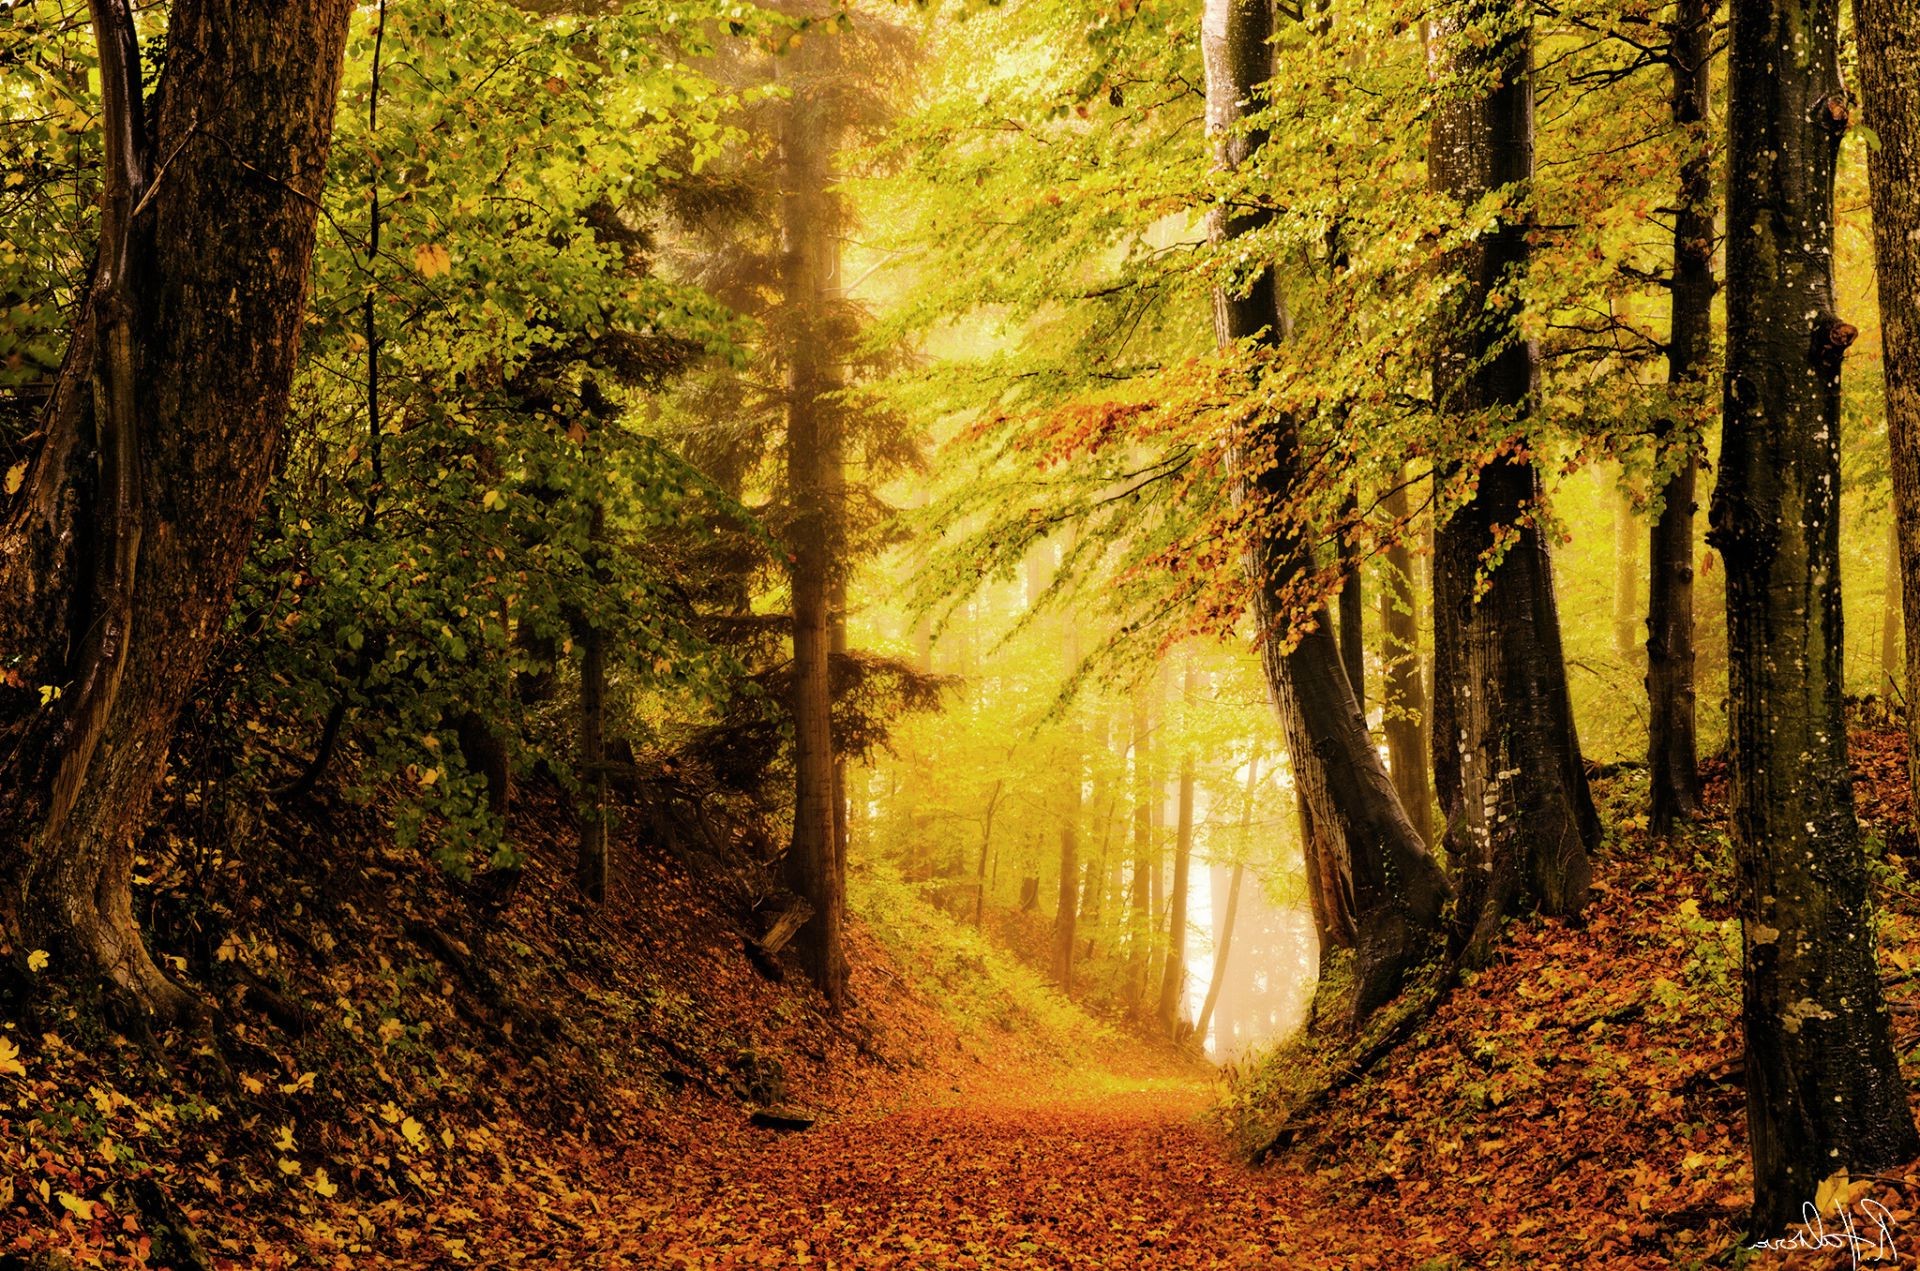 осень древесины осень лист дерево природа парк пейзаж руководство на открытом воздухе хорошую погоду дорога рассвет живописный свет туман пышные походу след солнце